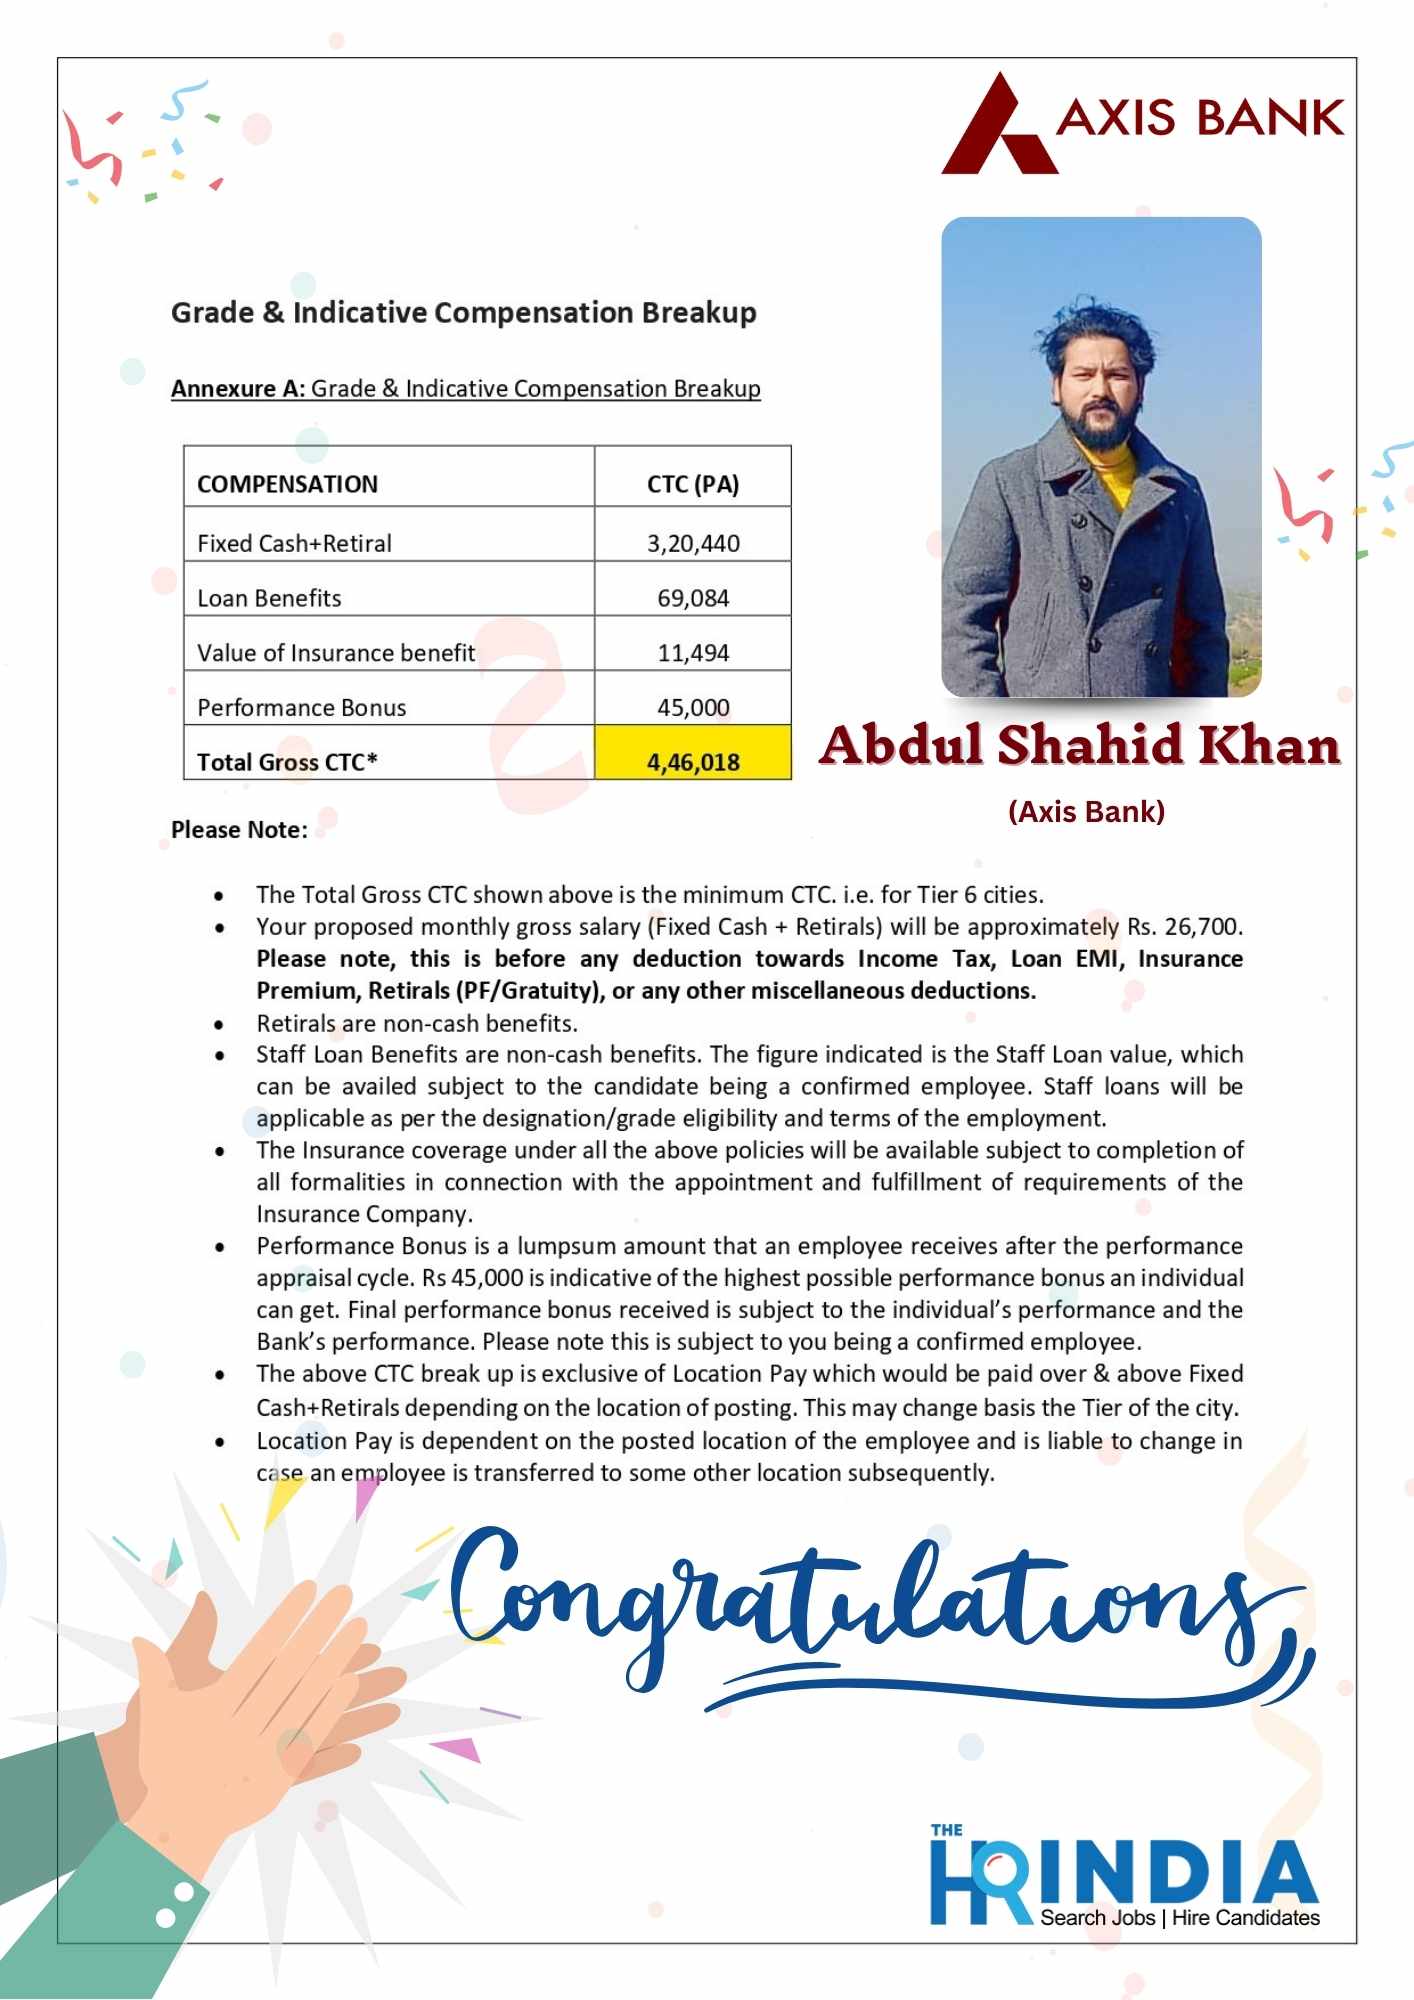 Abdul Shahid Khan (1)  | The HR India